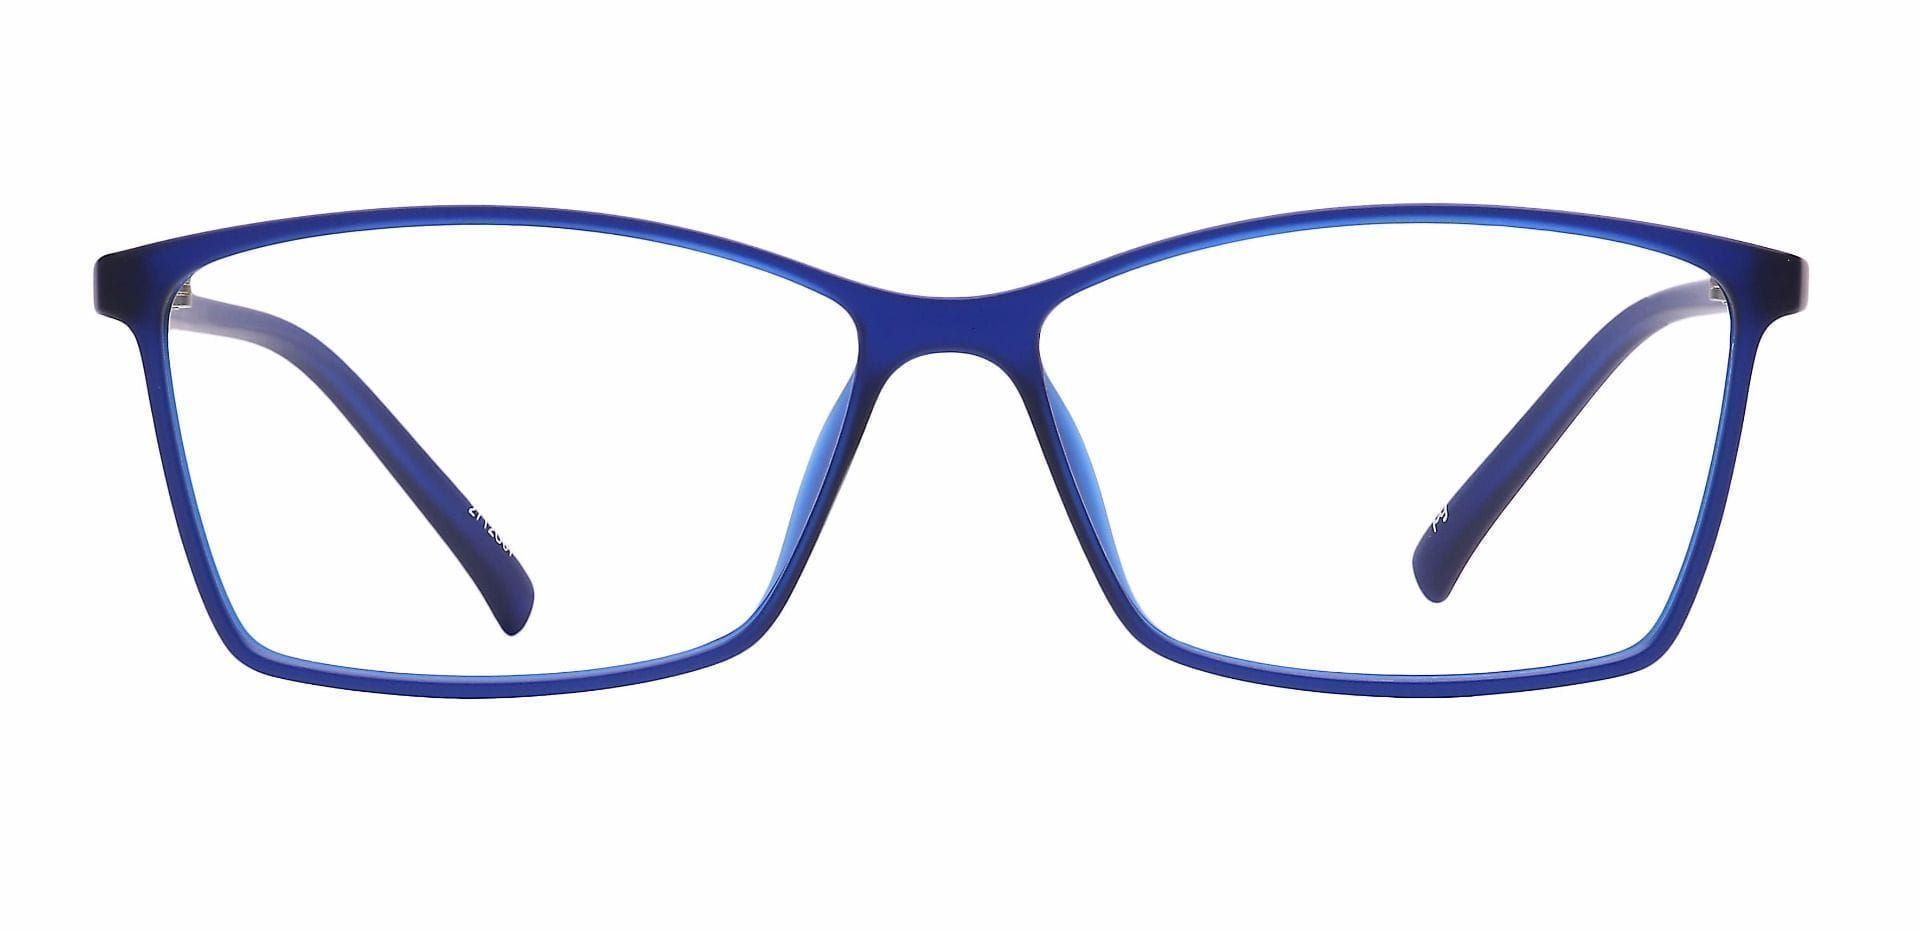 Align Rectangle Non-Rx Glasses - Blue